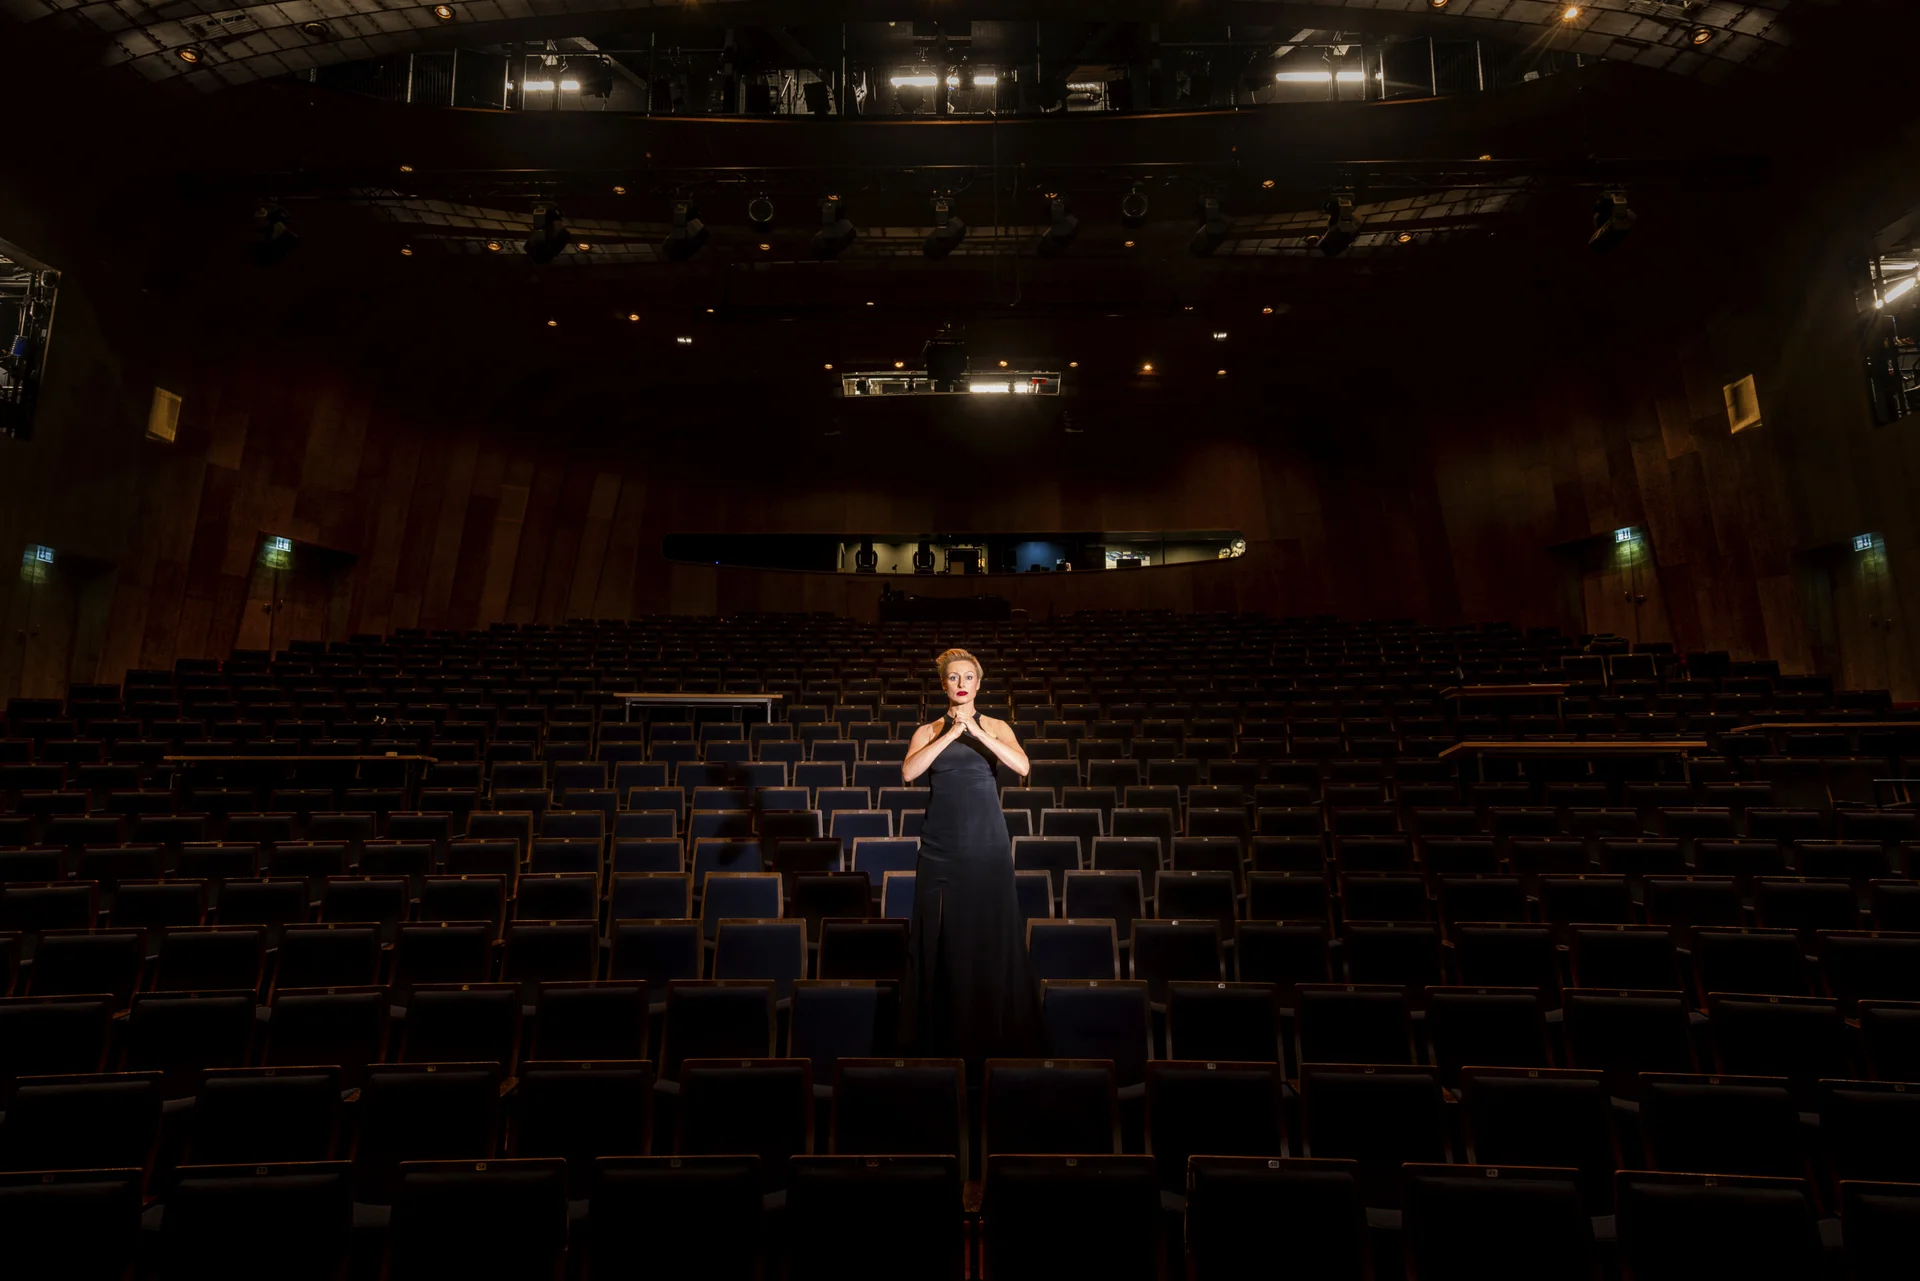 Lichtspot auf Peron im Kleid in der Mitte der Bühne eines leeren Theaters, Blick auf die Zuschauerstühle